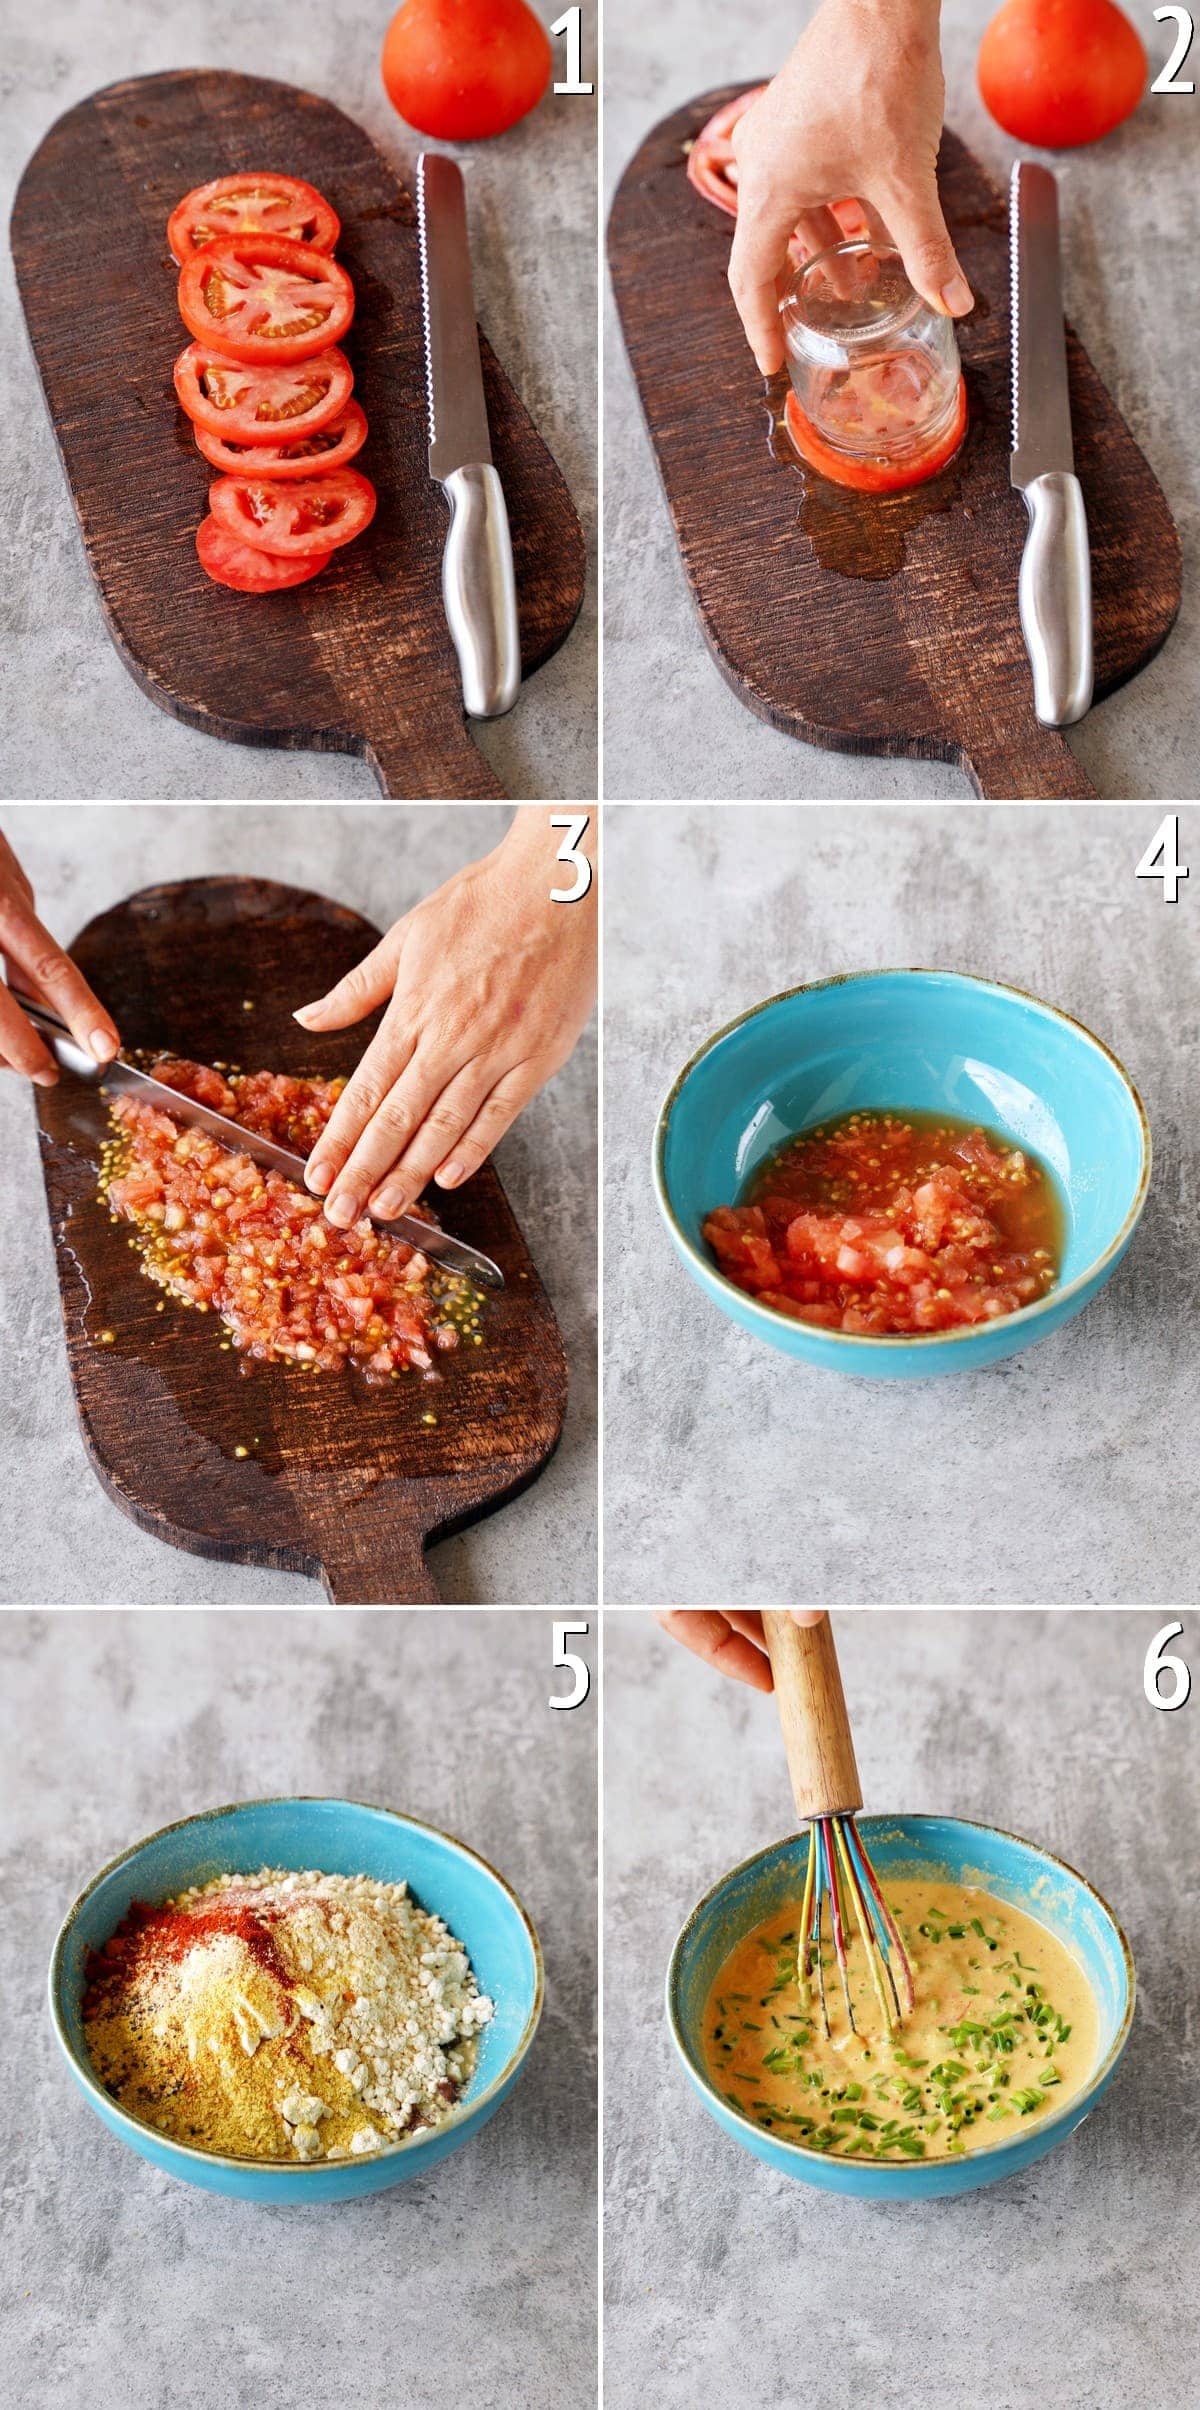 6 Schritt-für-Schritt-Bilder von der Zubereitung eines Tomaten-Kichererbsen-Teigs